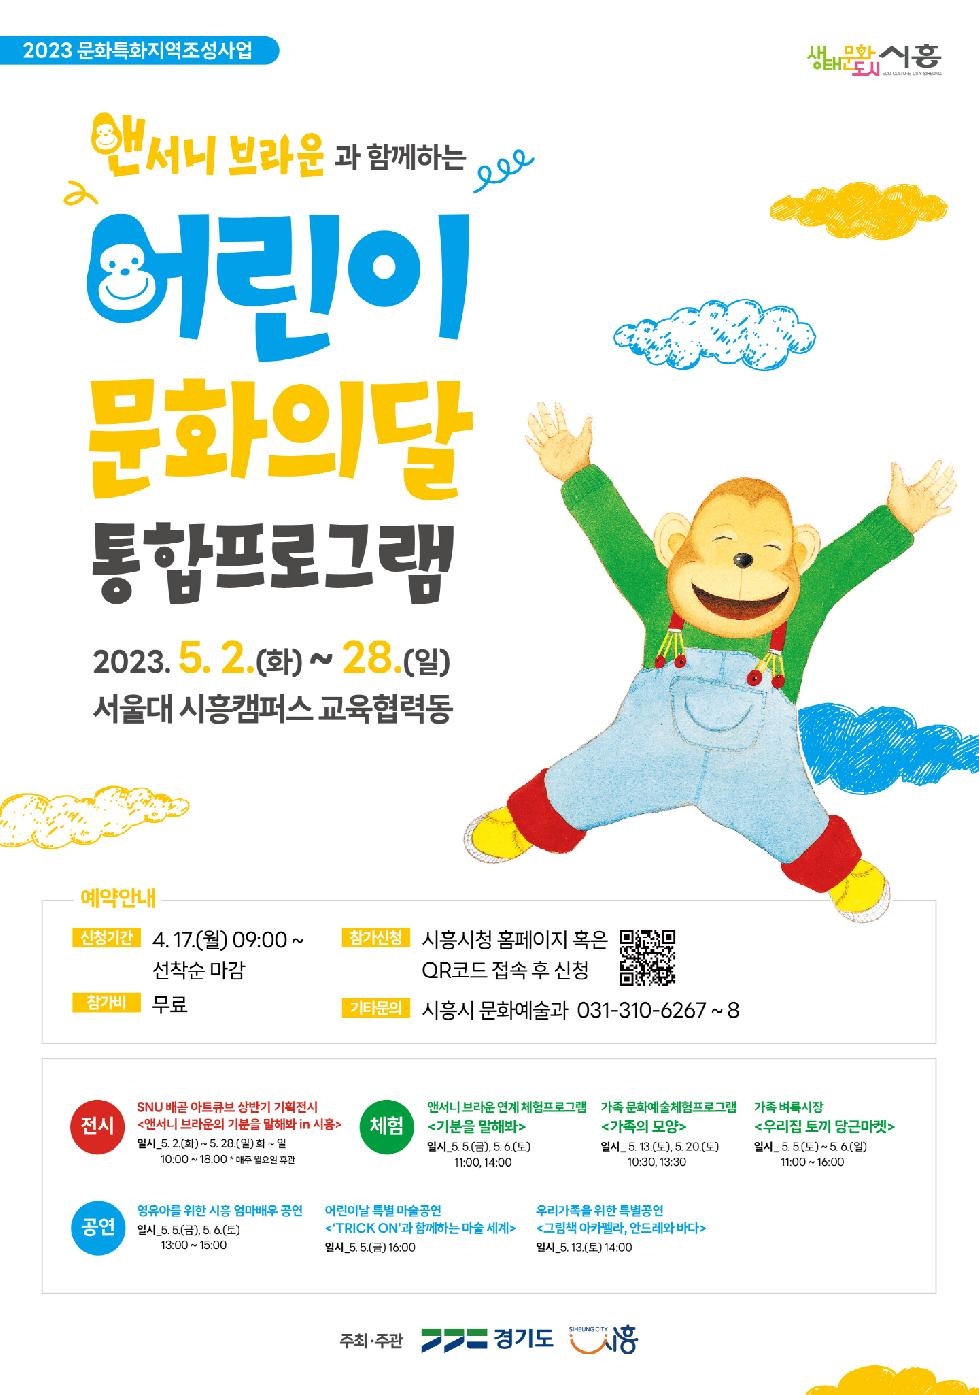 시흥시, ‘어린이 문화의 달’ 통합 프로그램 추진... 내달 2일부터 한 달간 전시, 공연